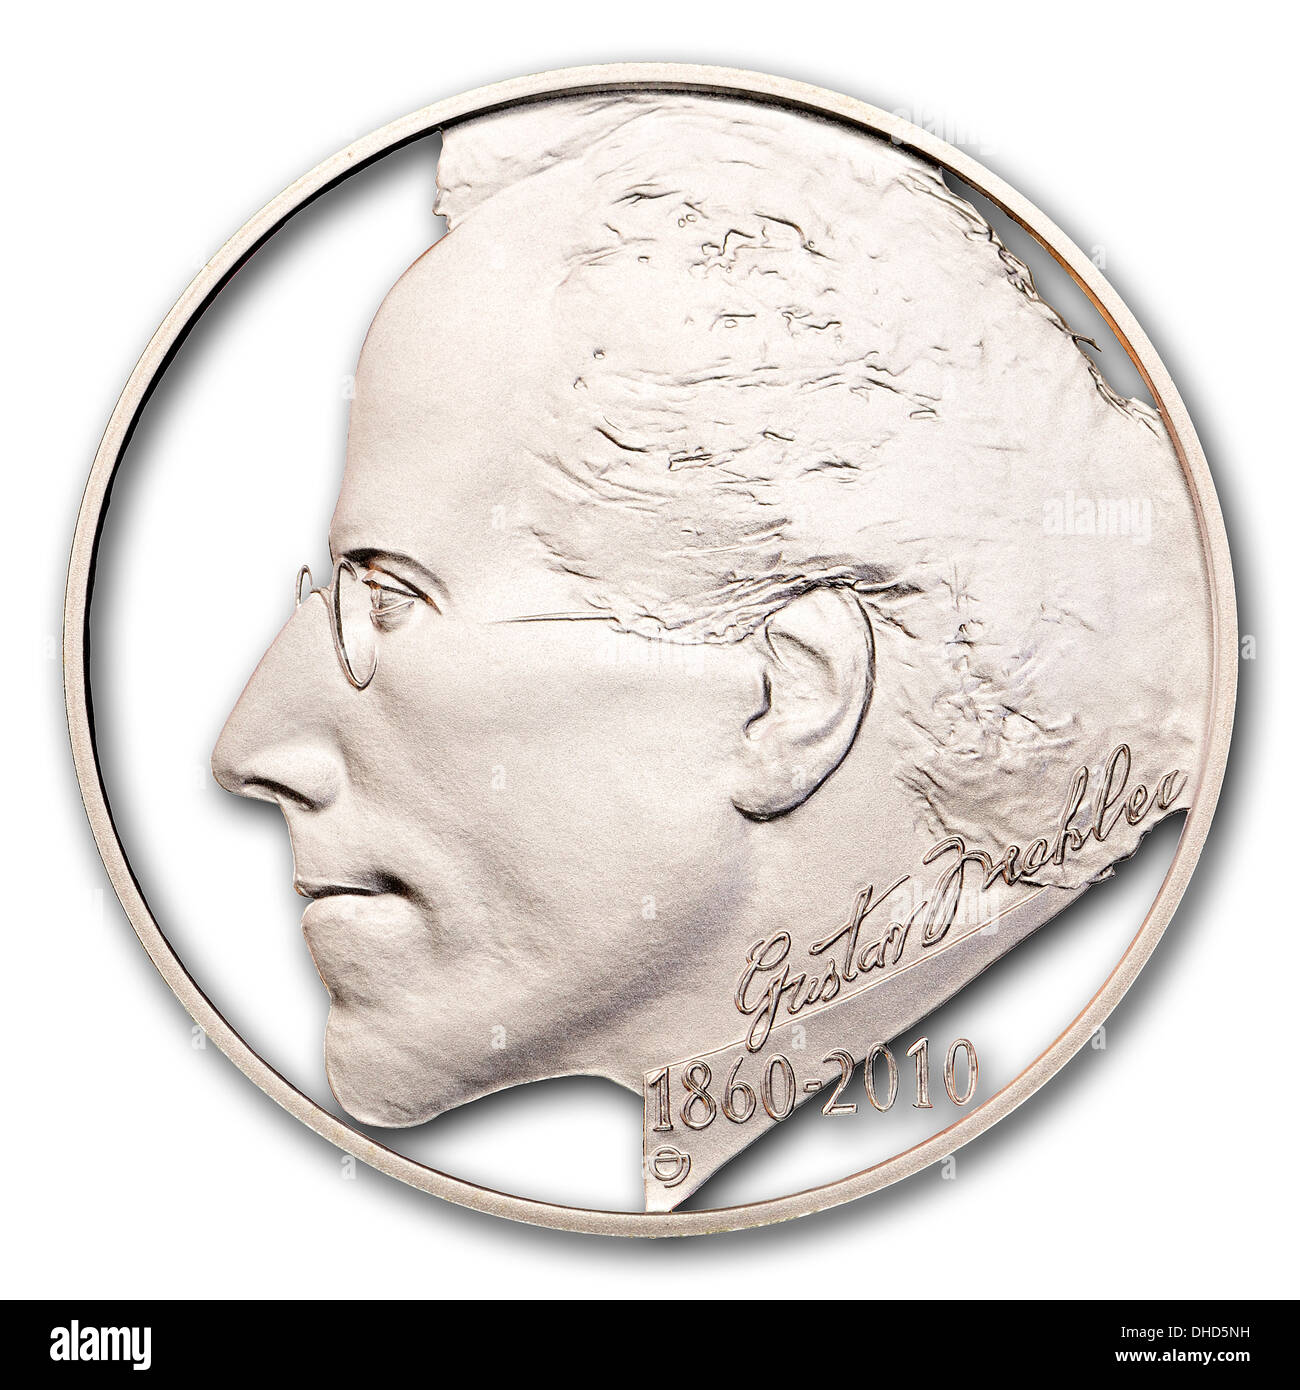 Porträt von Gustav Mahler (Komponist) von 200Kc Silber-Gedenkmünze aus der Tschechischen Republik. Stockfoto